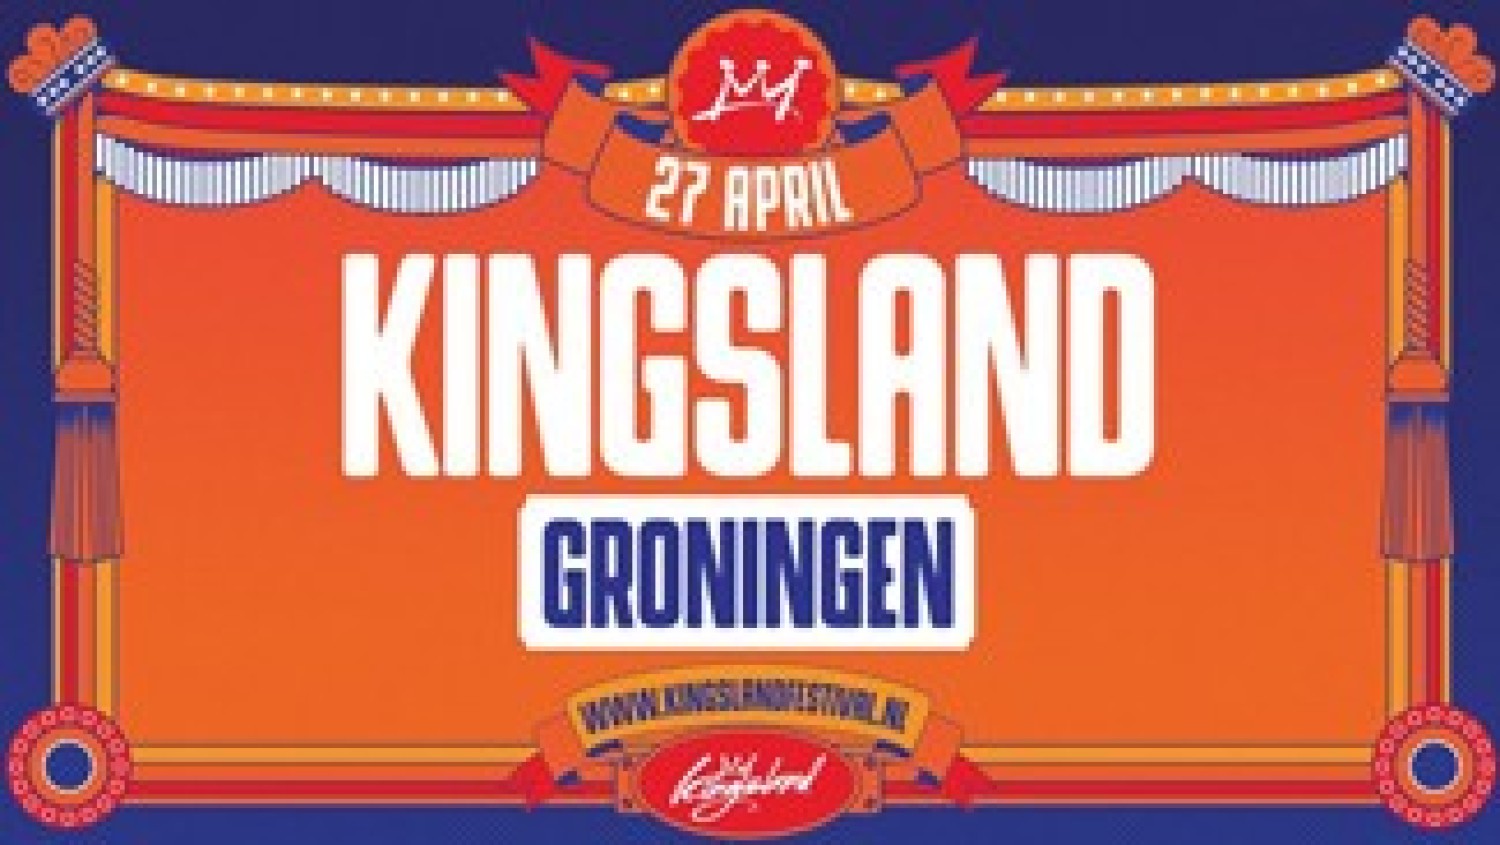 Party report: Kingsland Festival Groningen, Groningen (27-04-2018)